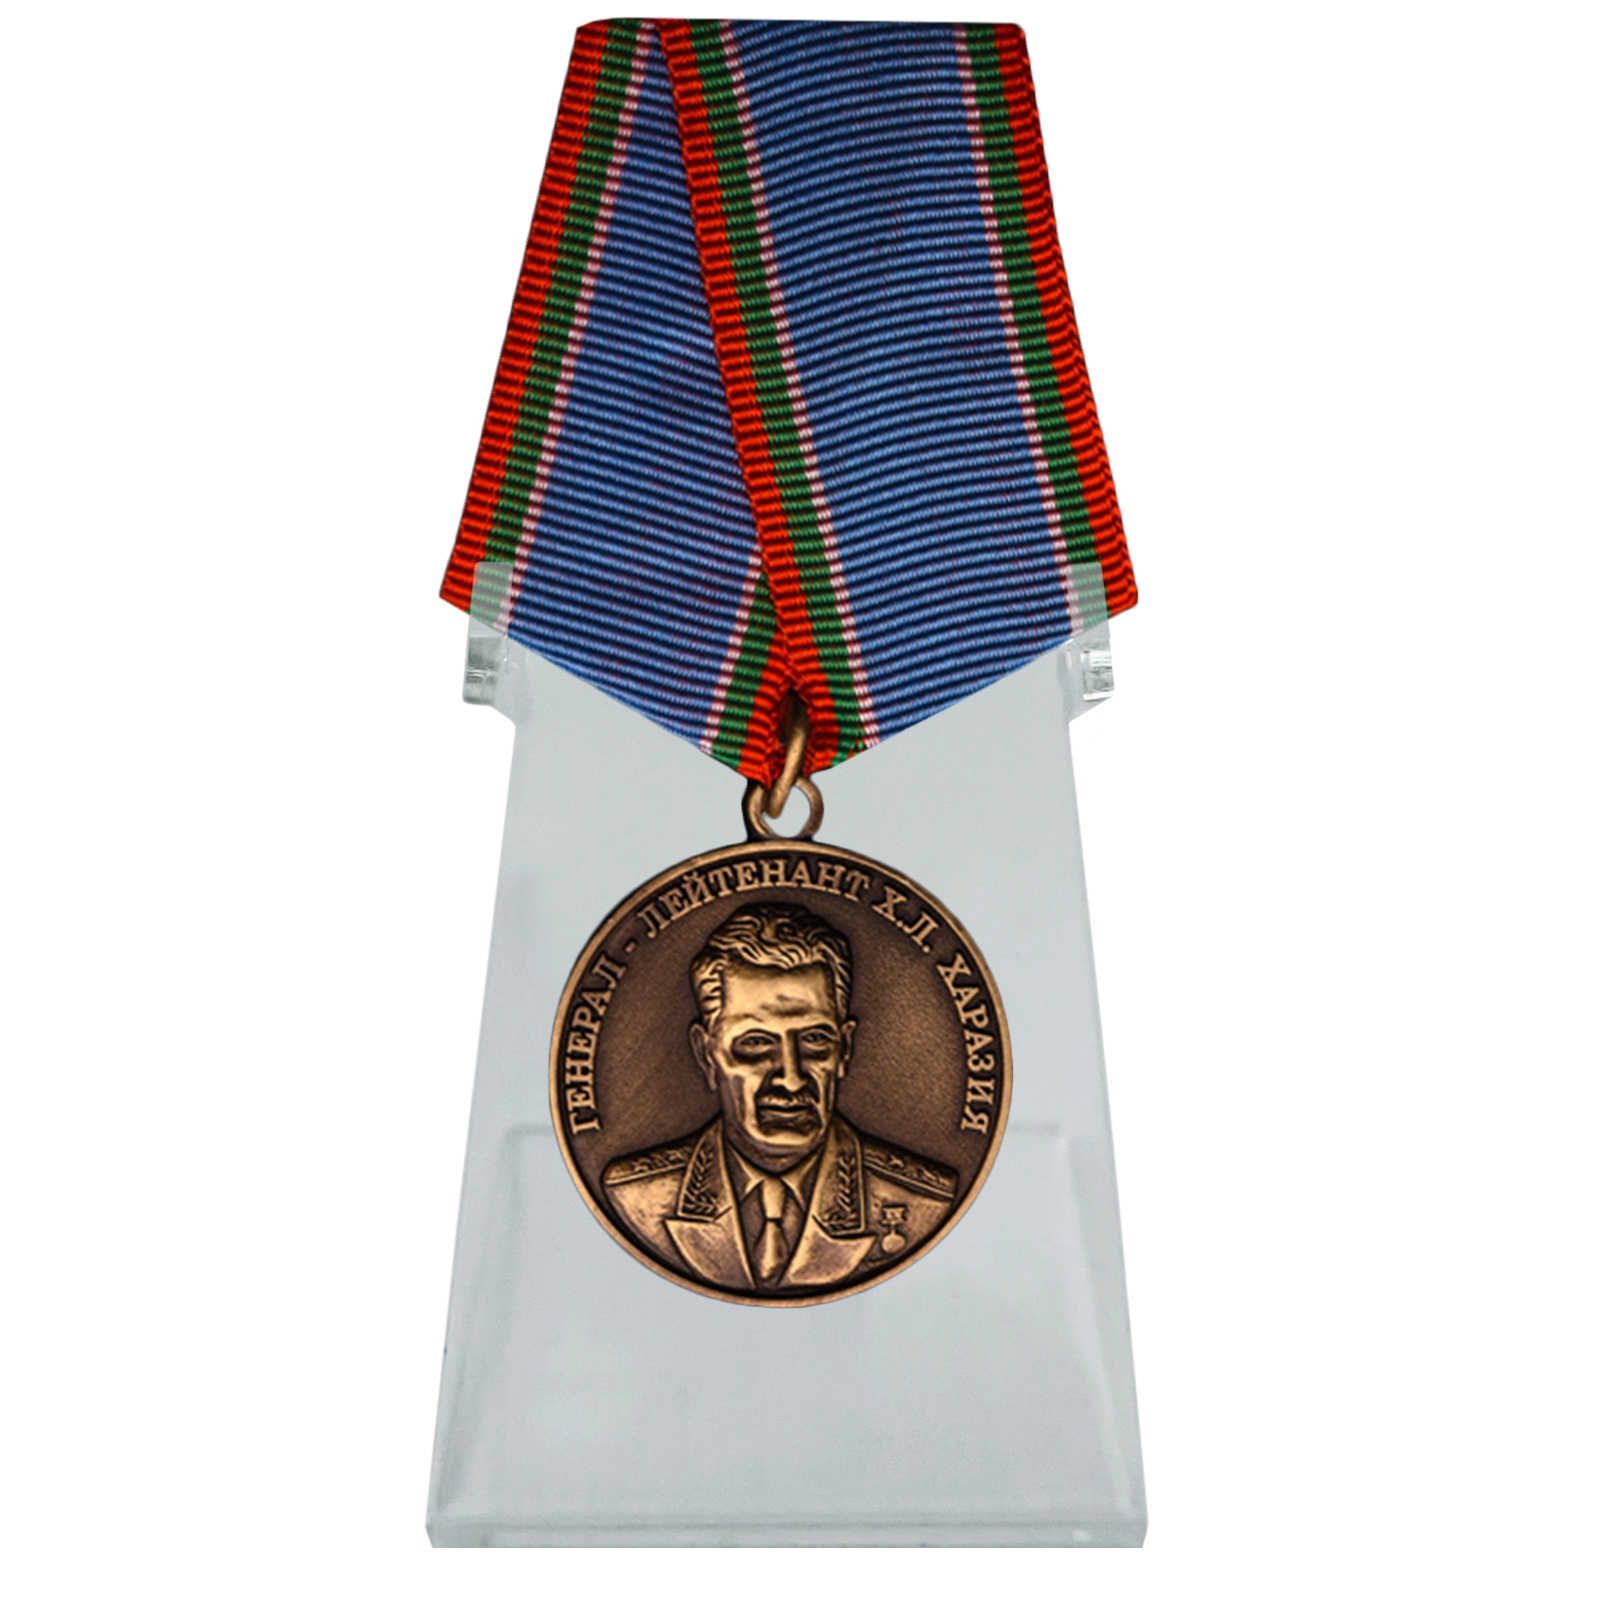 Купить медаль Генерал Харазия на подставке онлайн выгодно